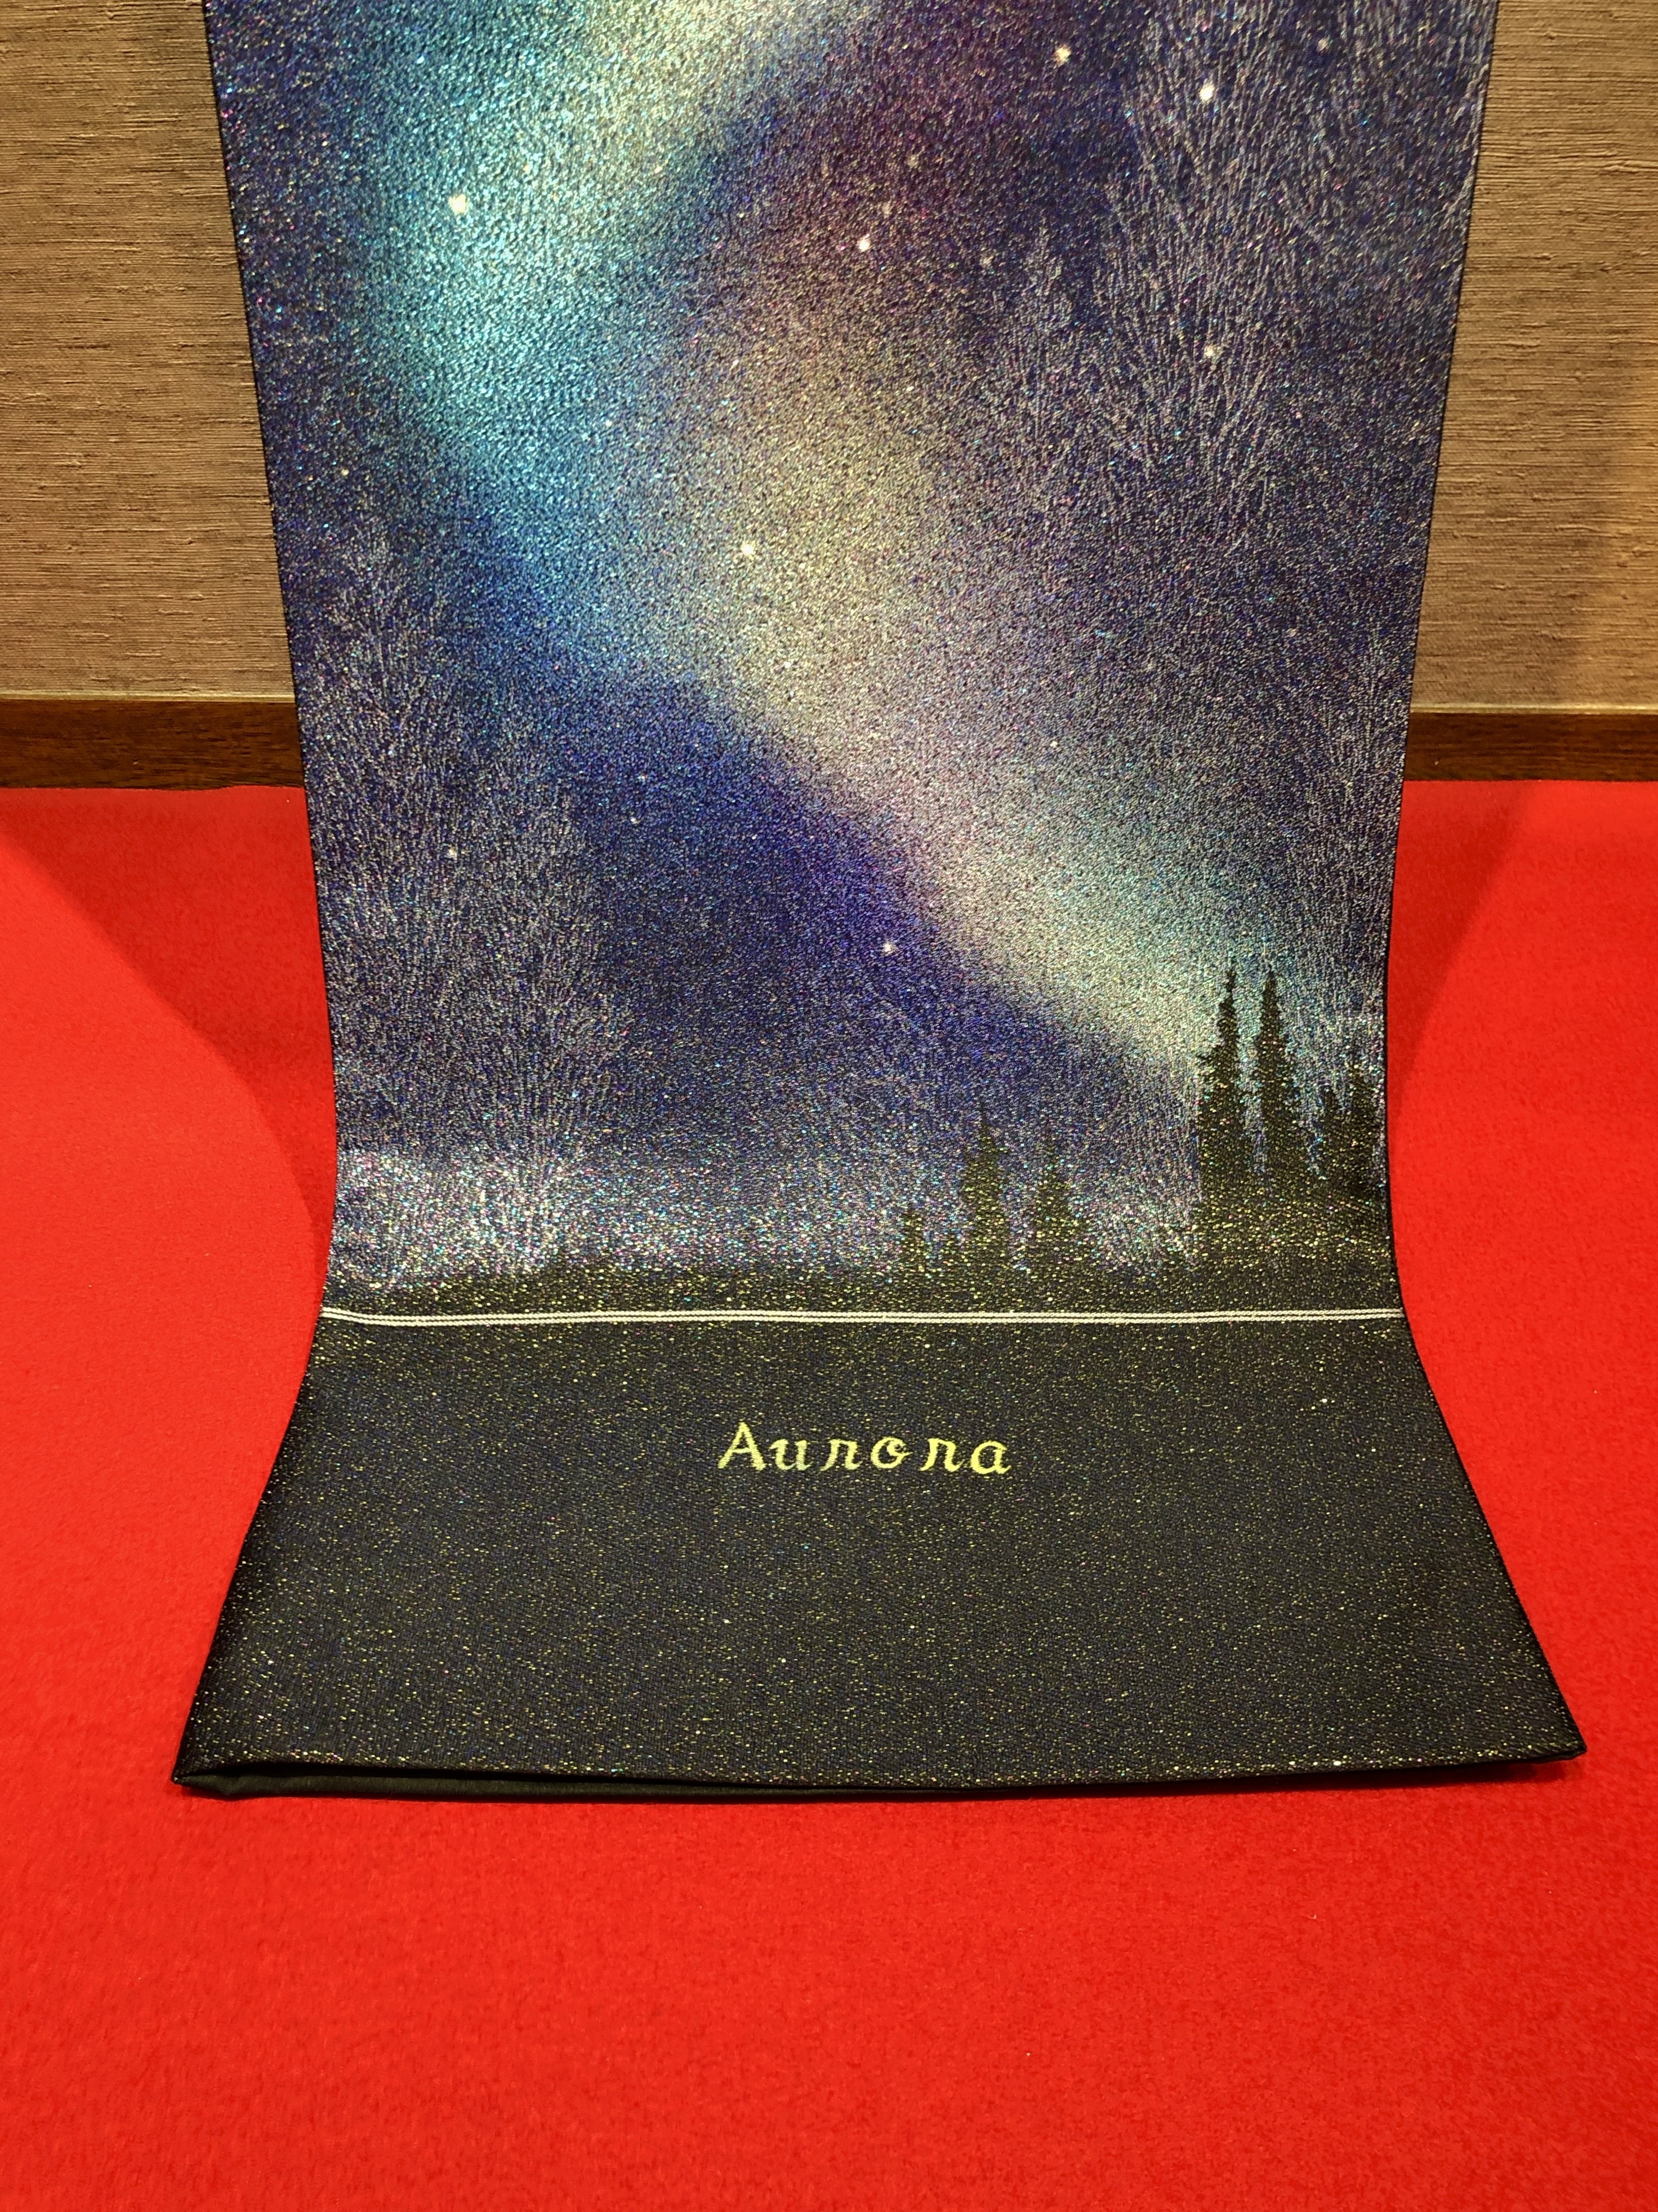 とみや織物 オーロラ Aurora 袋帯 | 帯ときもの やまぐち 洗練された